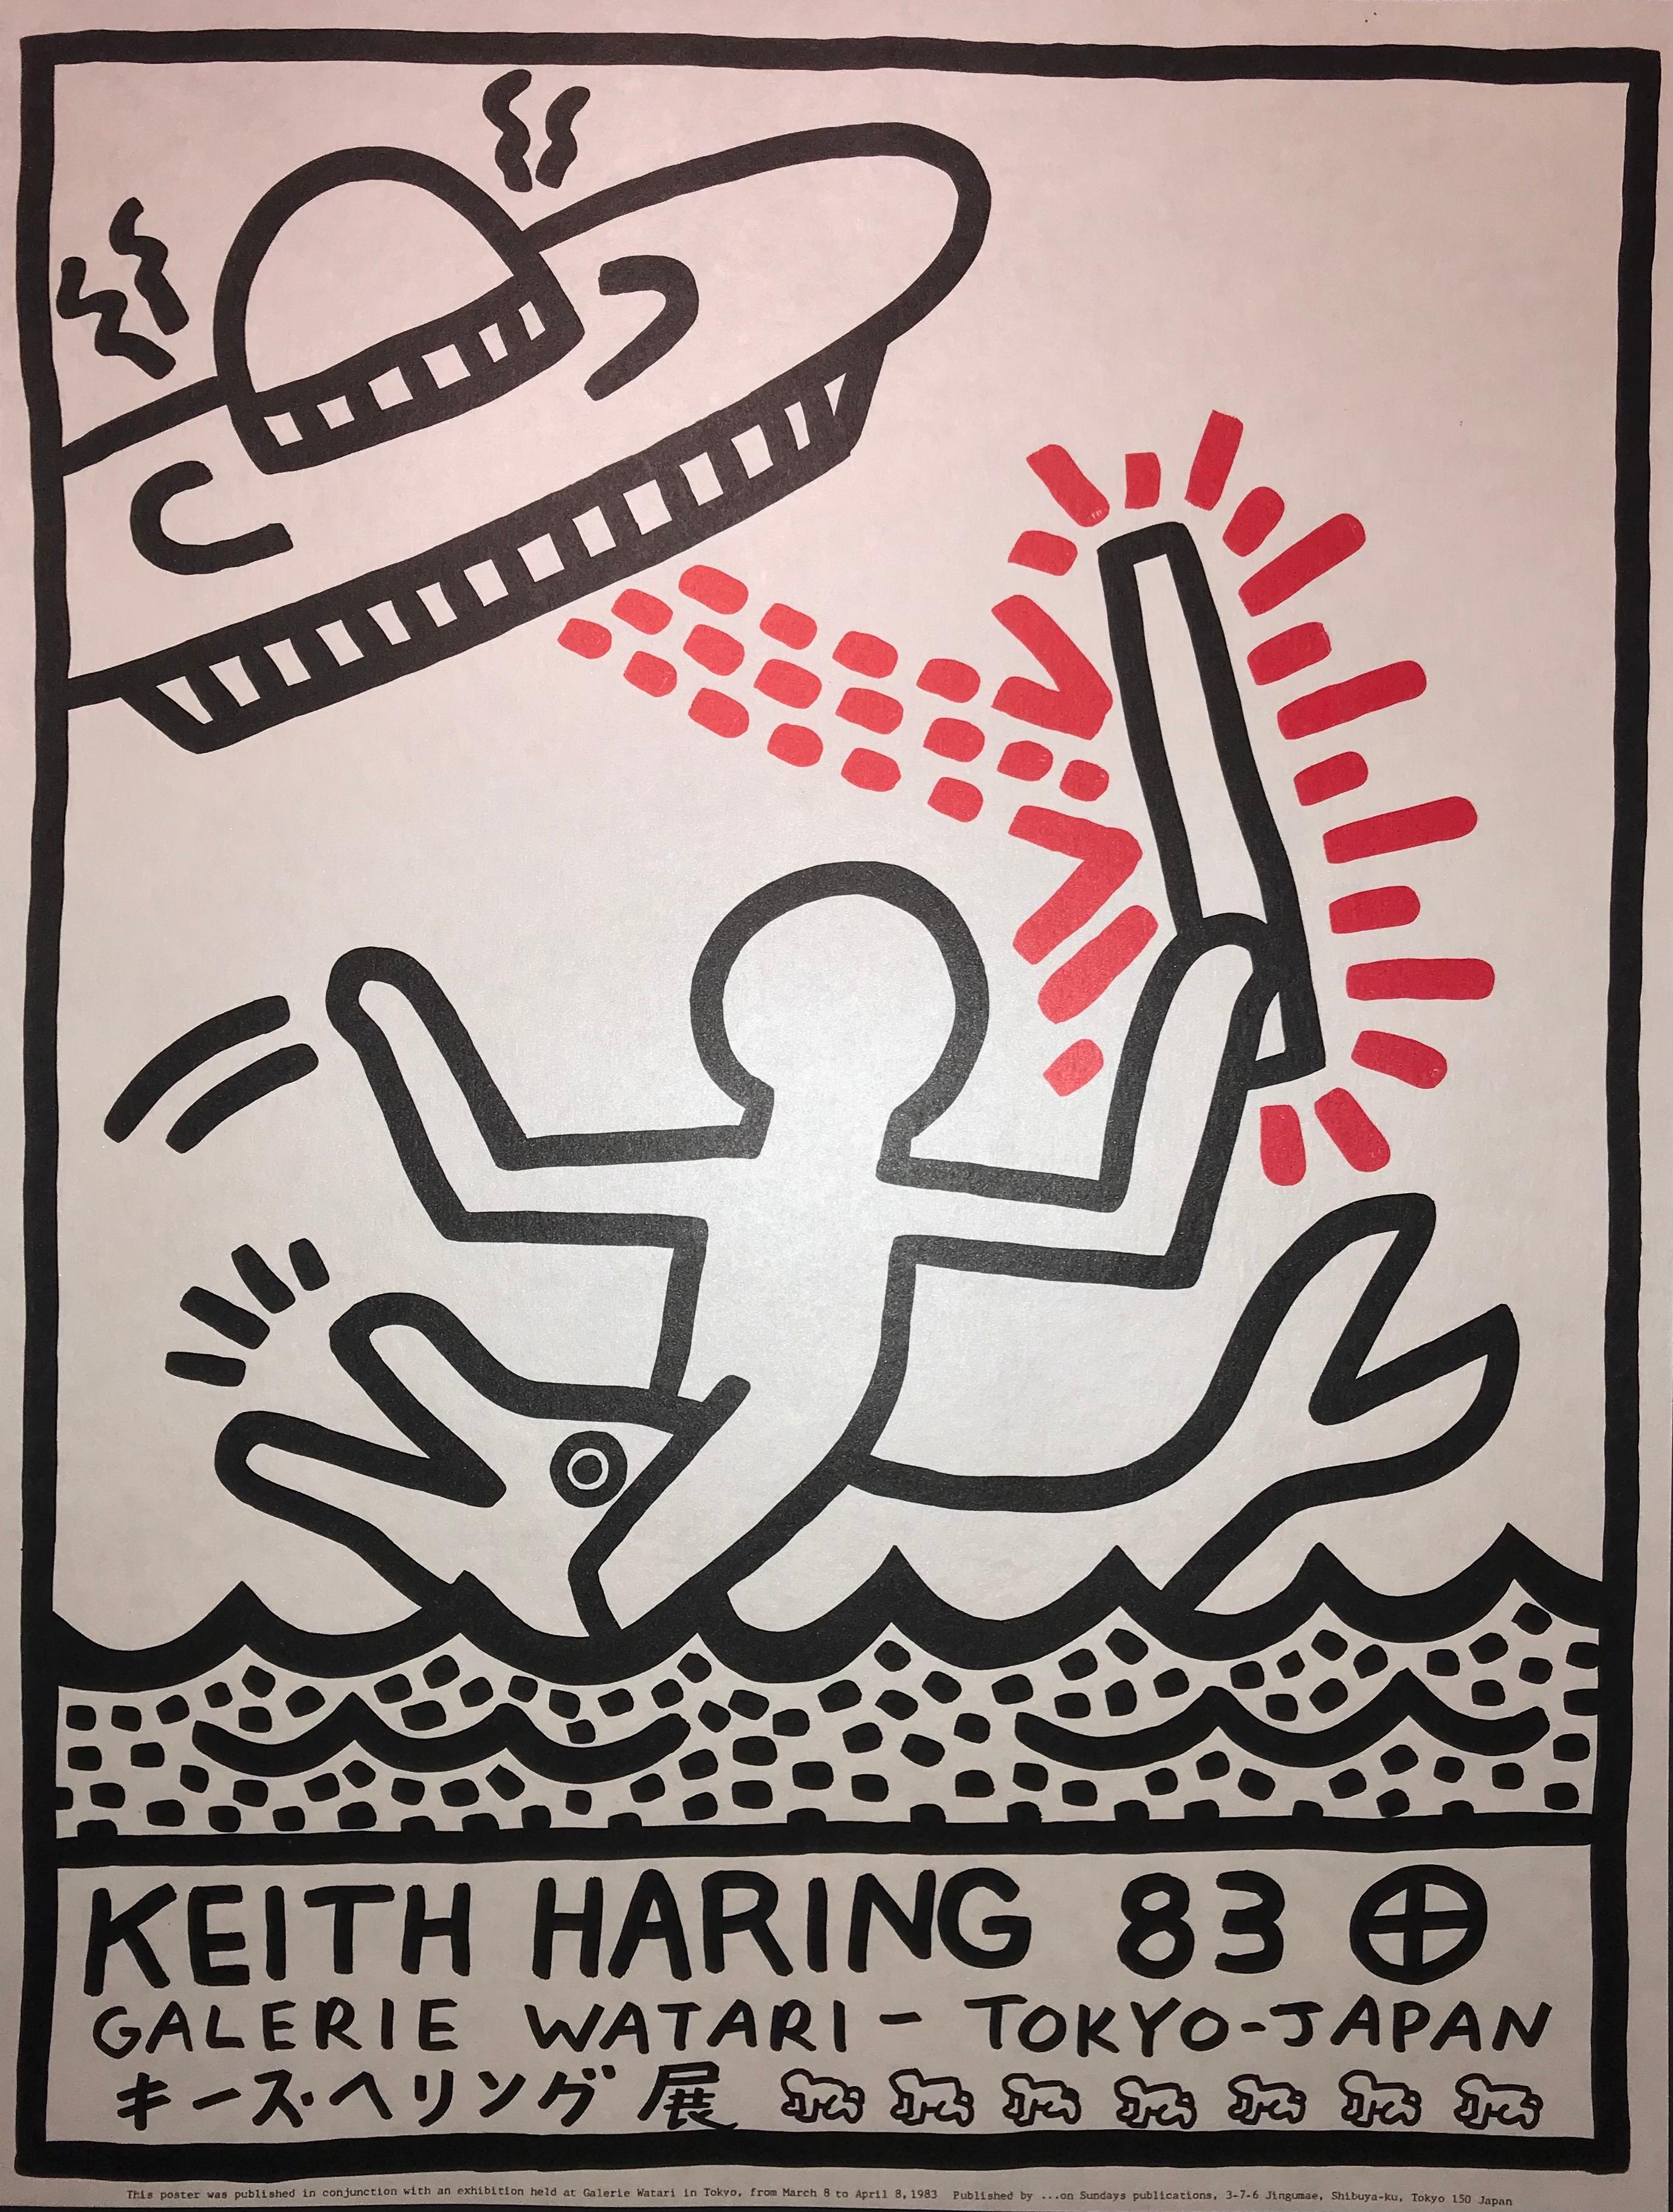 Keith Haring (1958-1990). Affiche d'exposition de la Galerie Watari, lithographie de 1983 